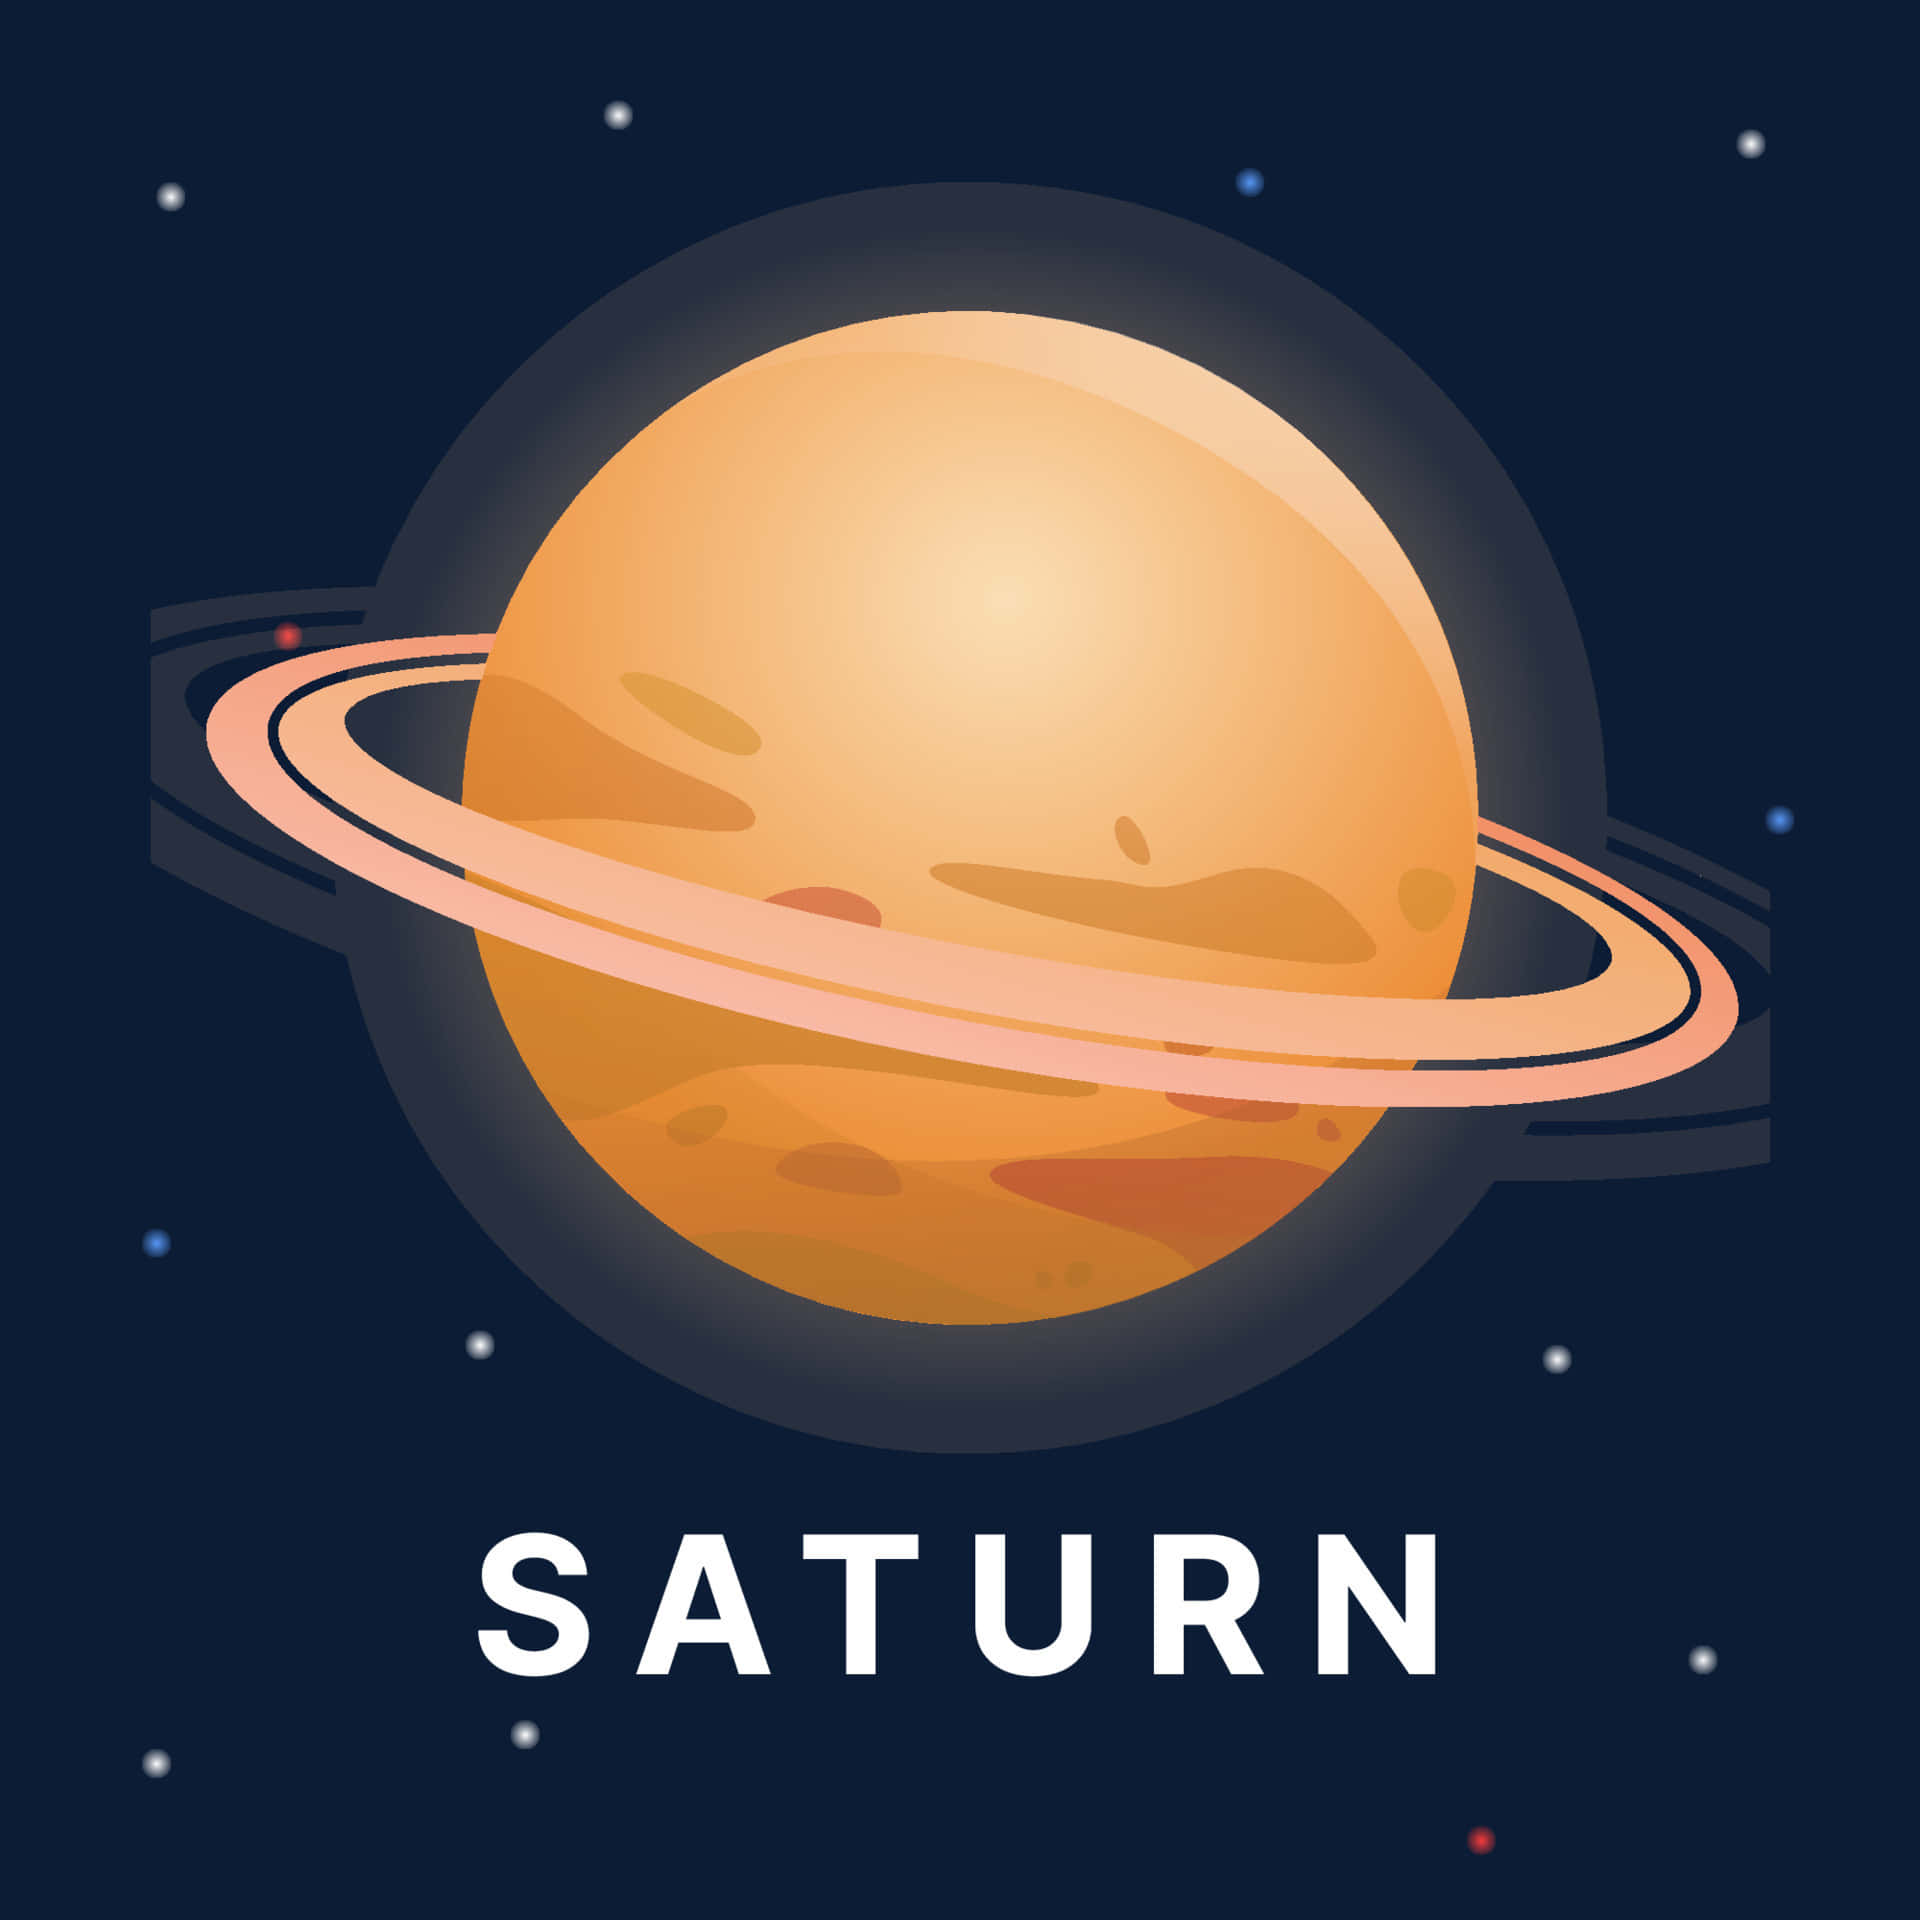 Labelleza Del Colorido Y Magnífico Sistema De Anillos De Saturno